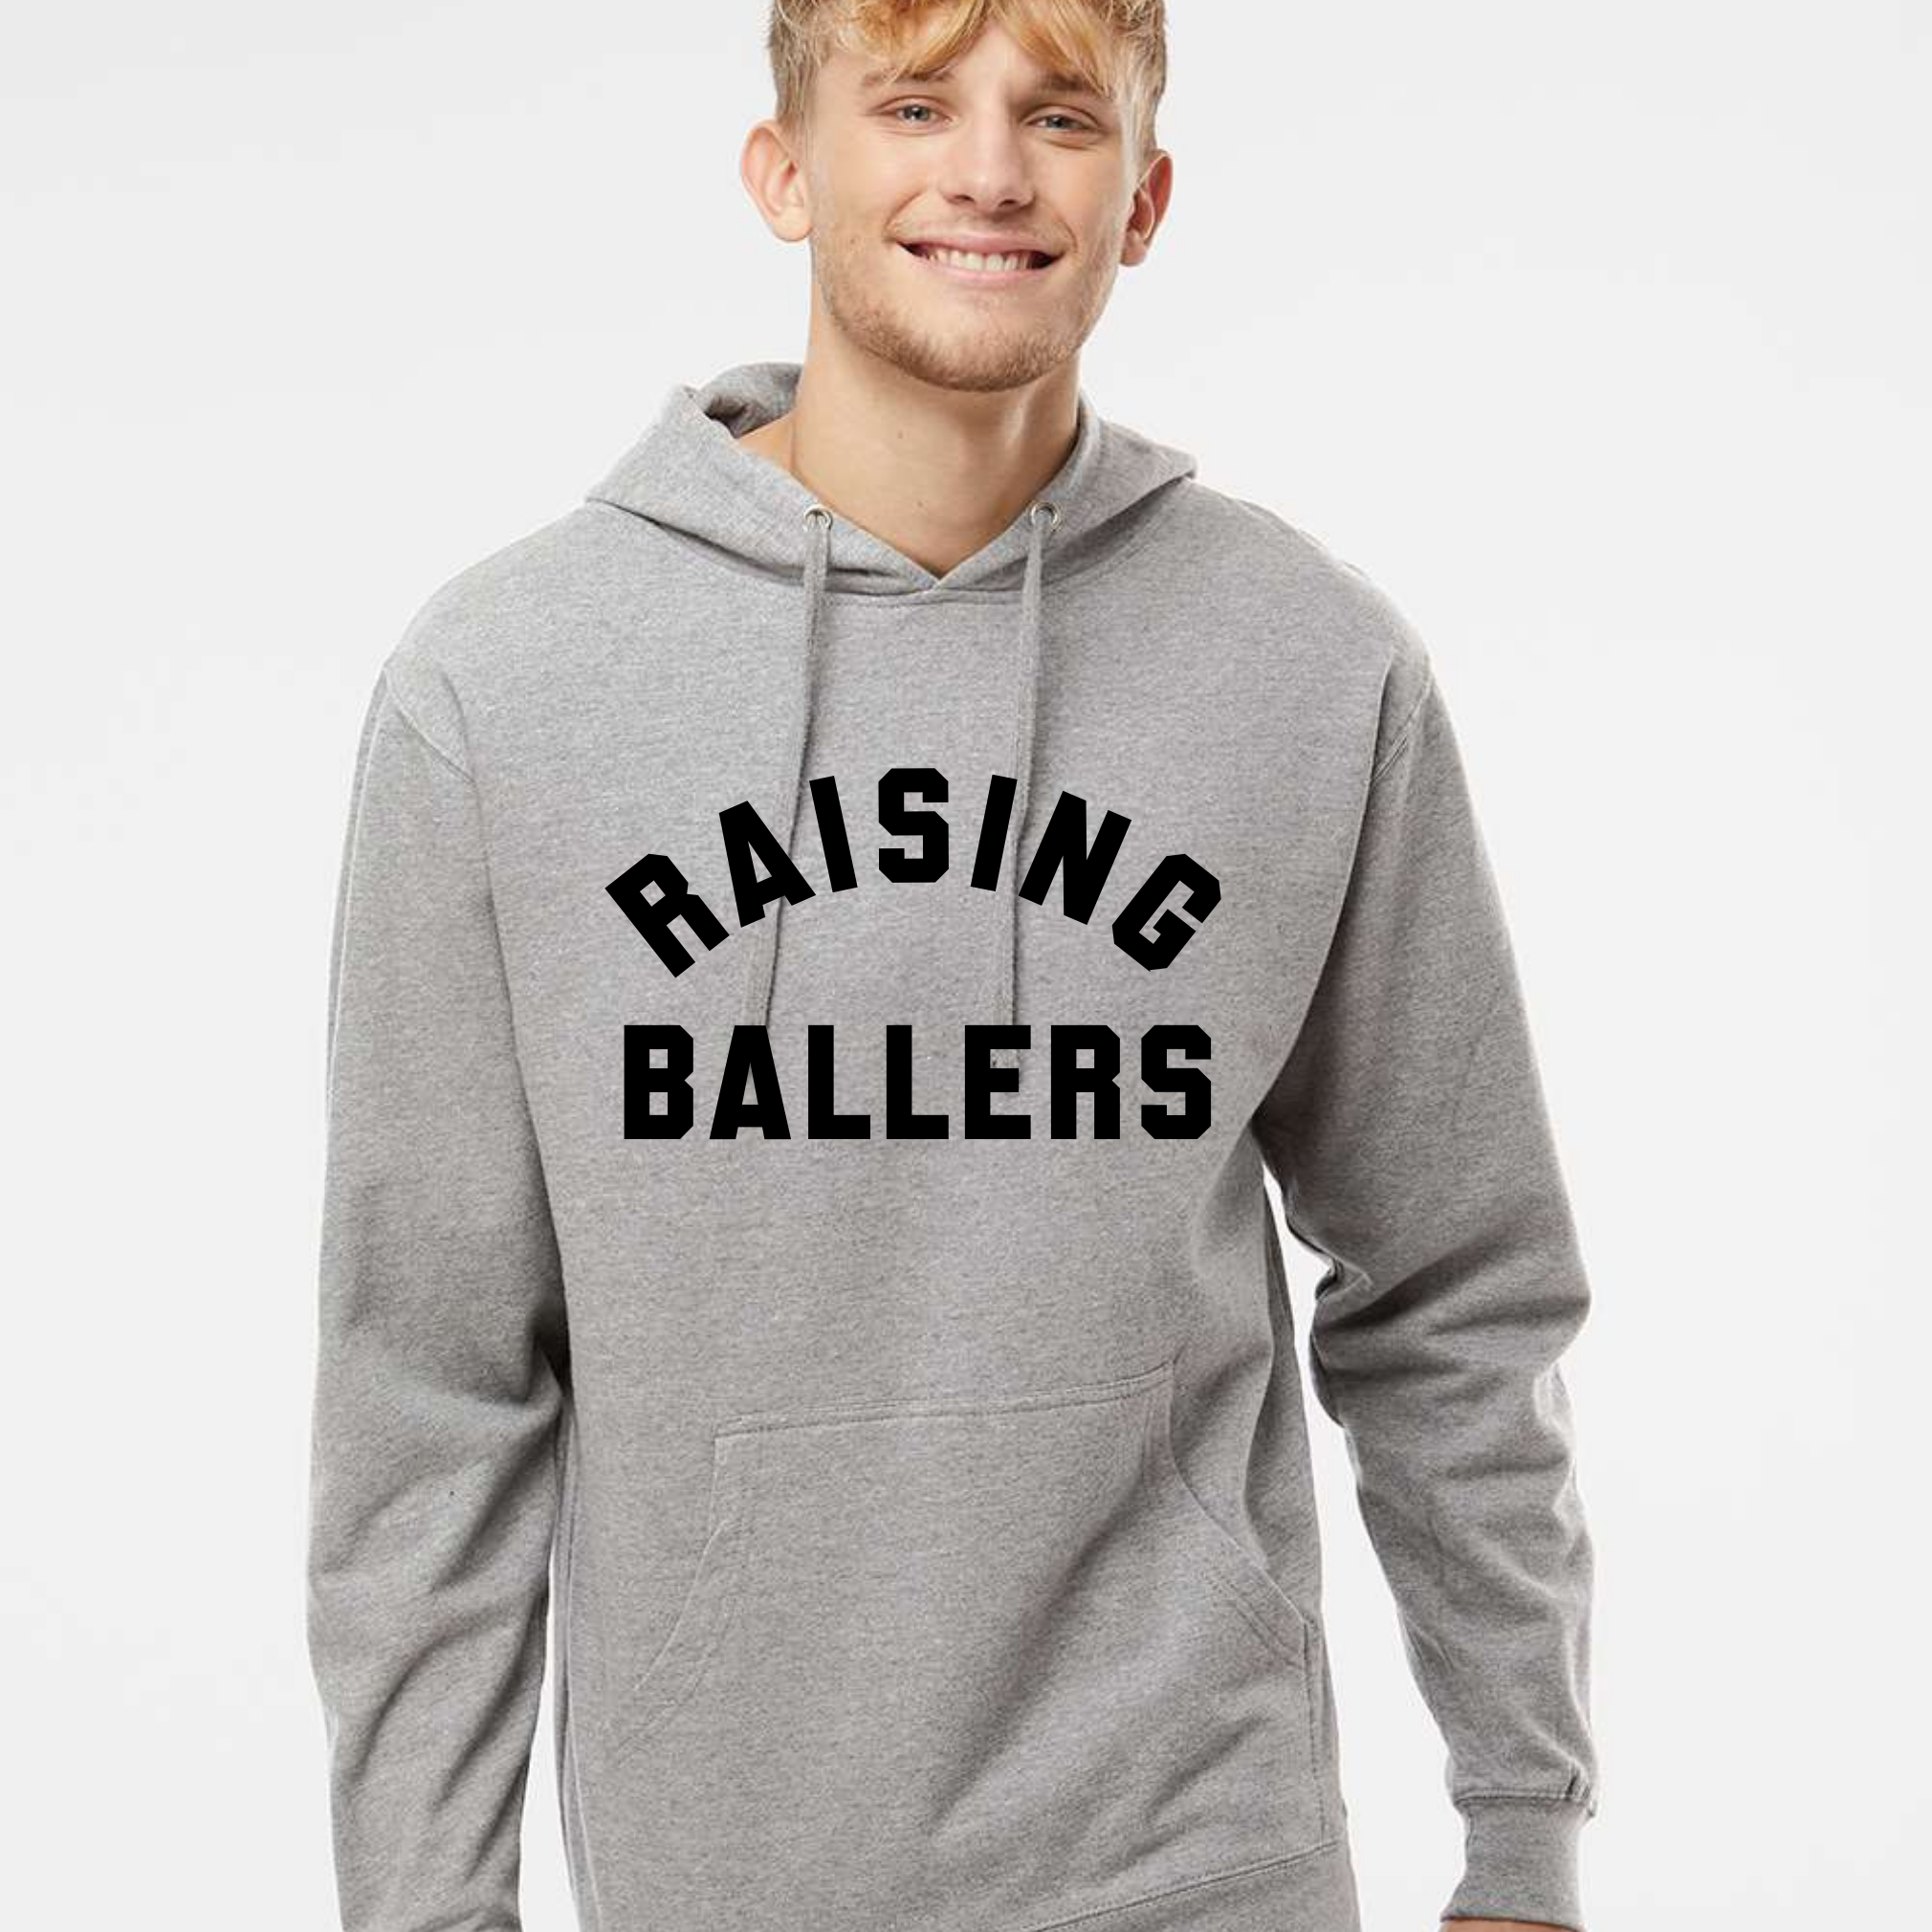 Raising Ballers Hoodie